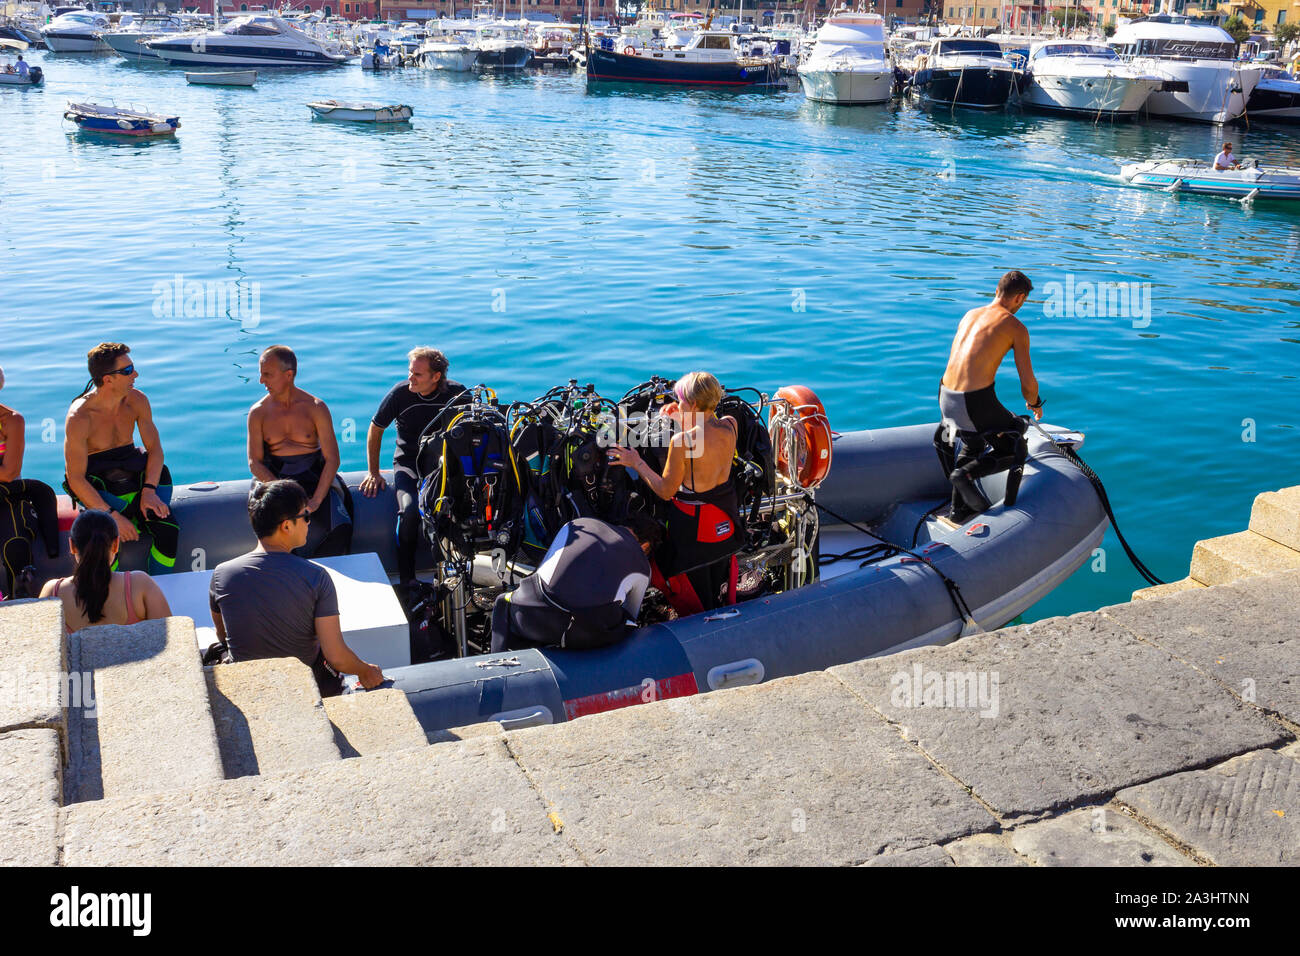 Santa Margherita Ligure, Italie - 13 septembre 2019 : un groupe de plongeurs sur le bateau gonflable soyez prêt pour une plongée Banque D'Images